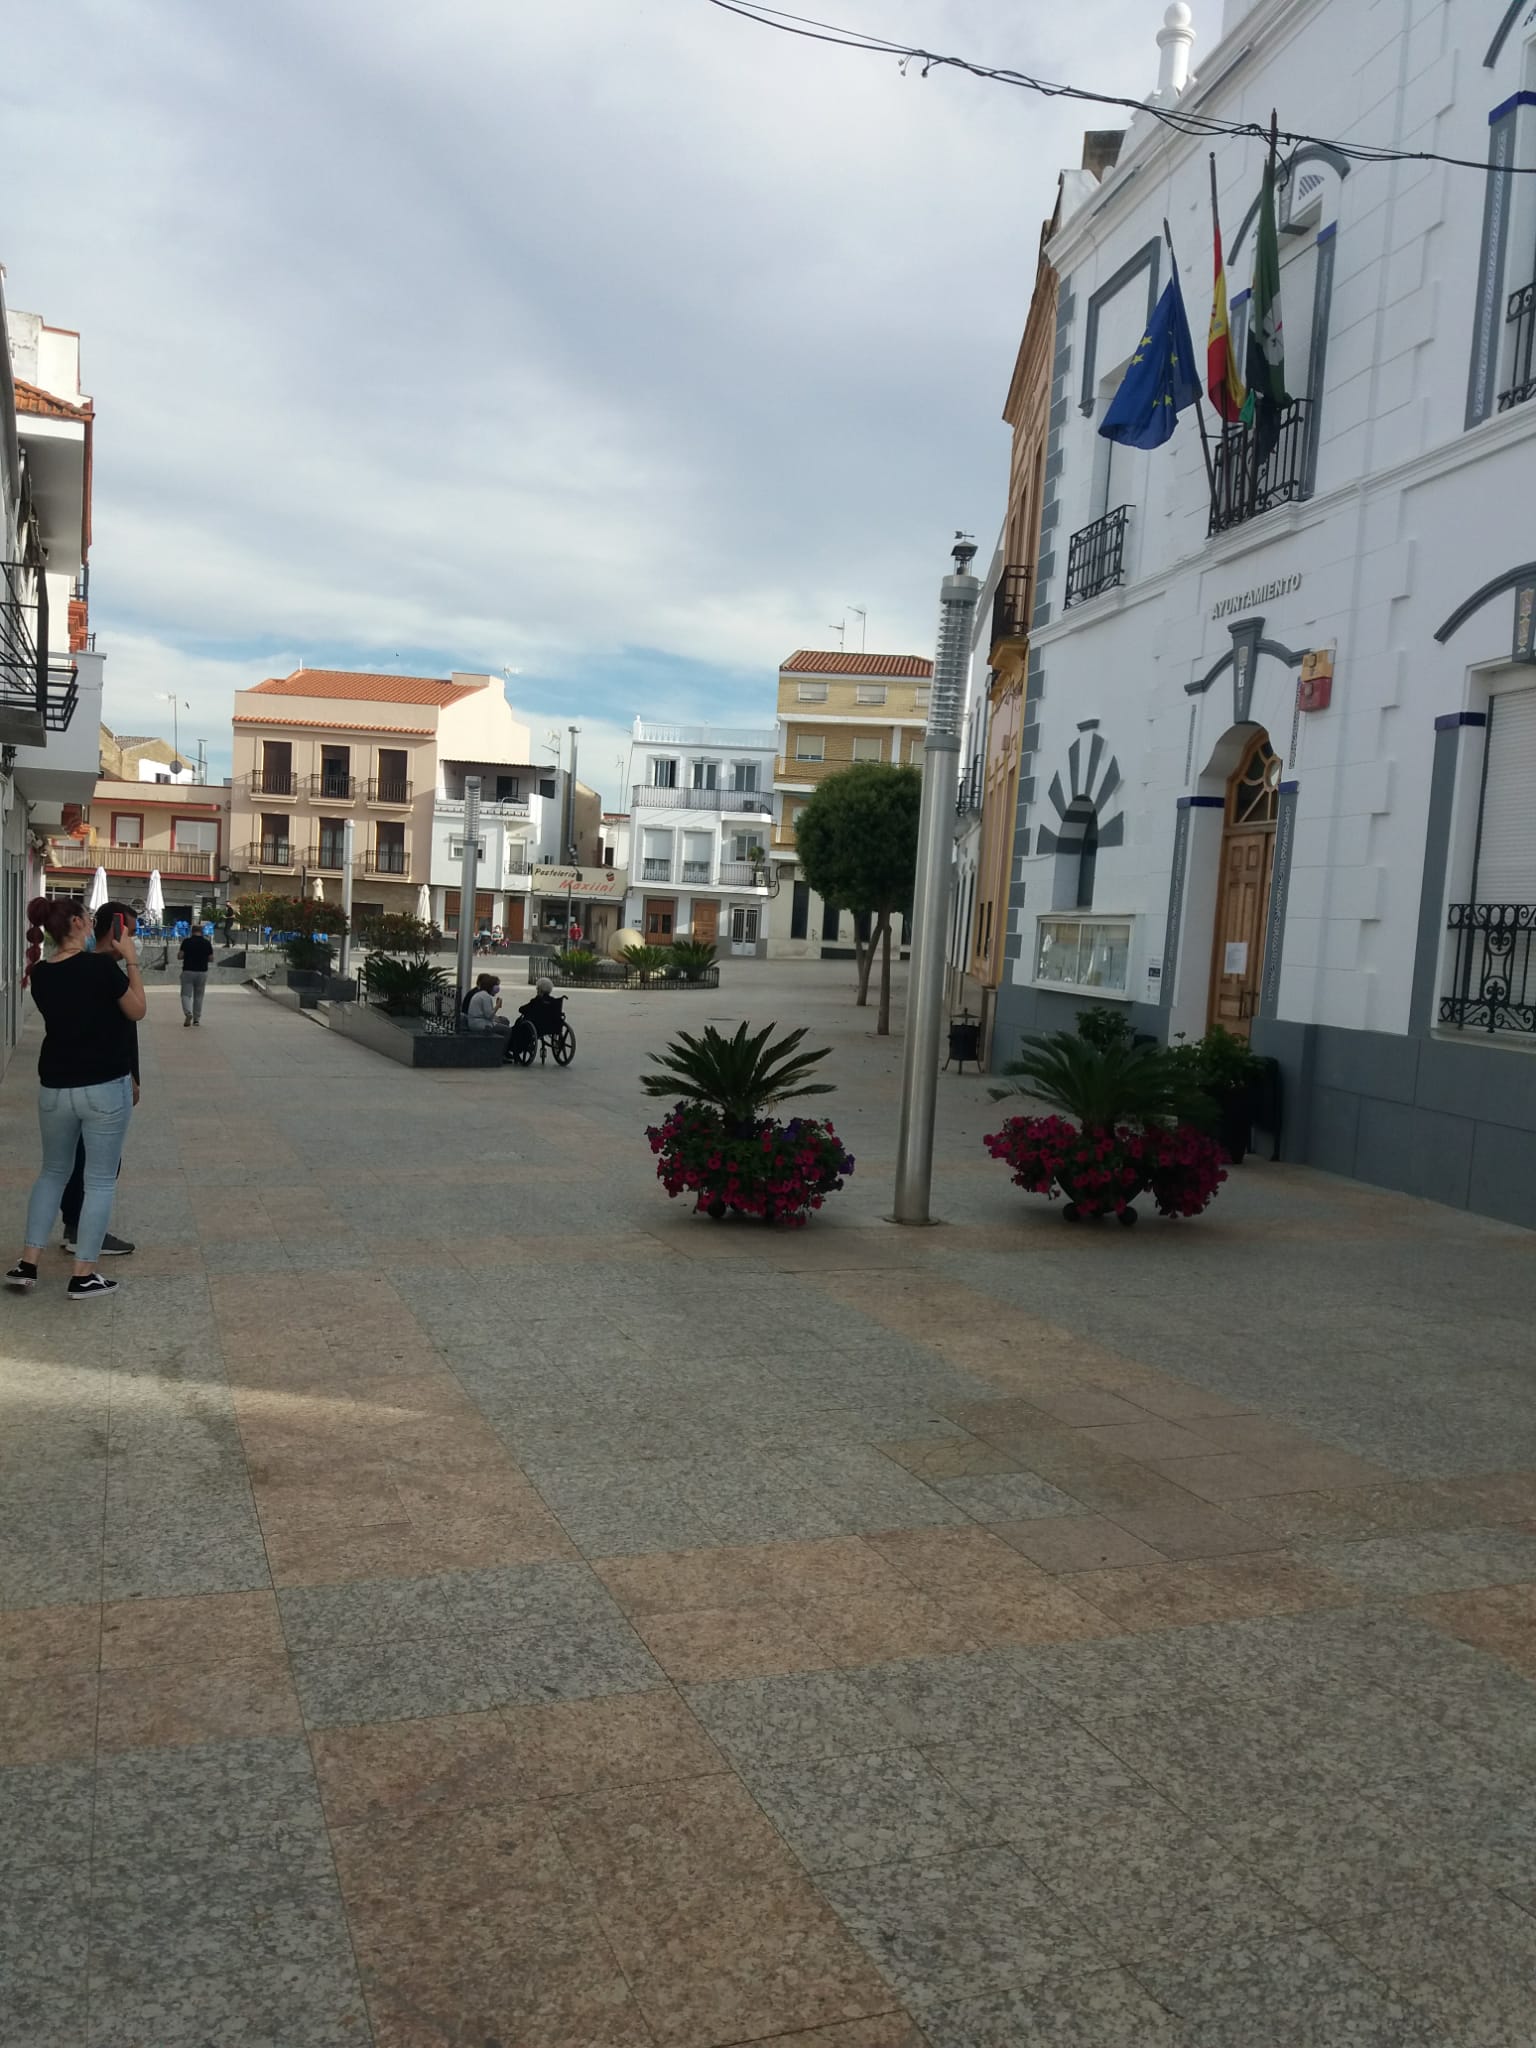 Ayuntamiento y Plaza de España de Calamonte